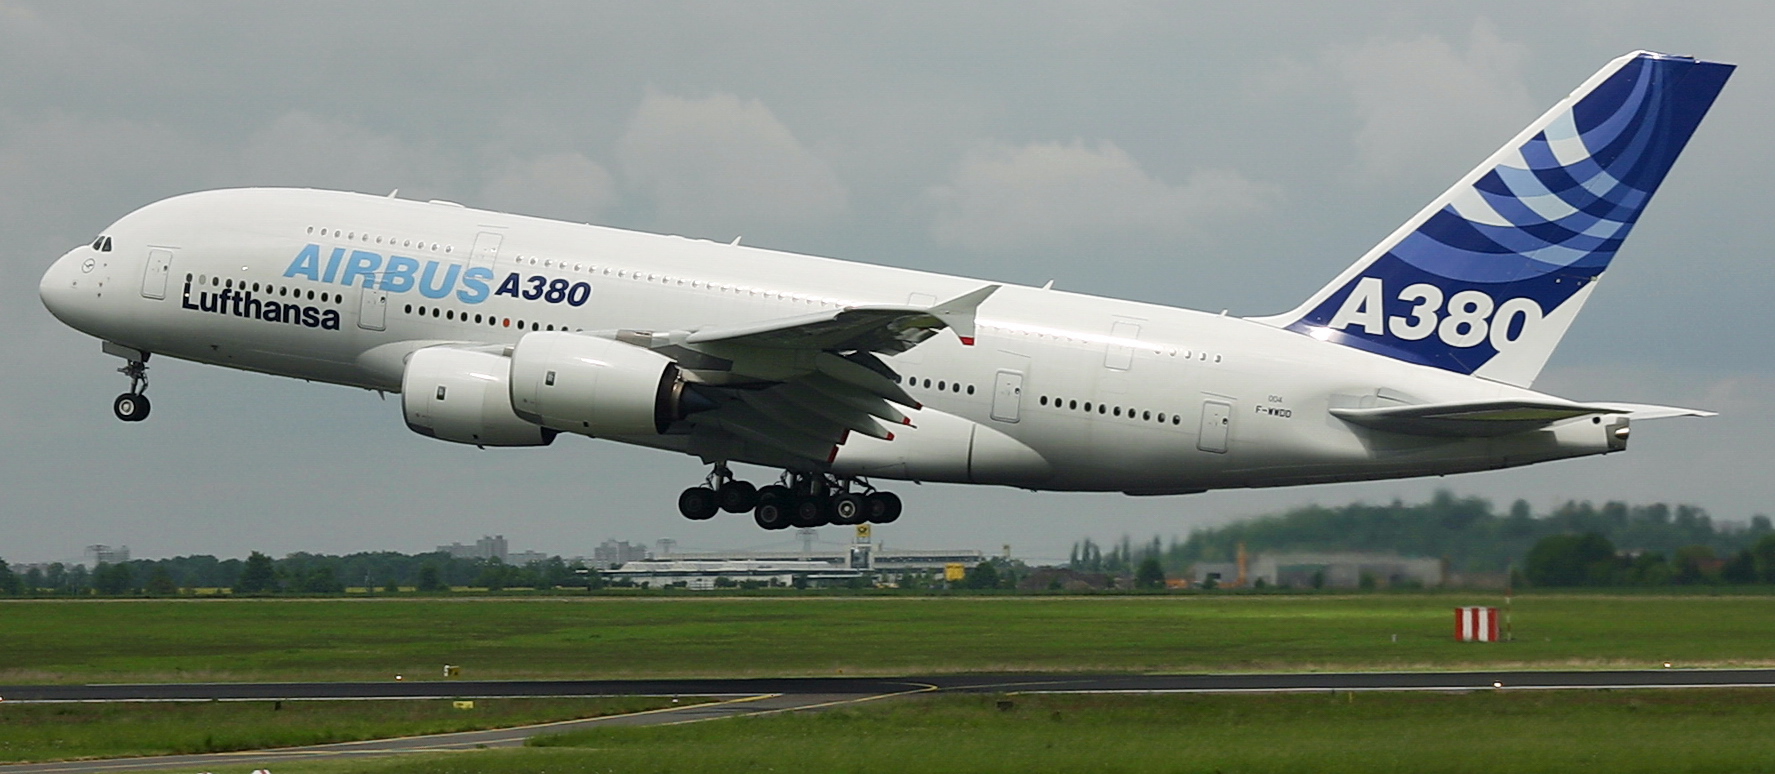 Airbus_A380_inbound_ILA_2006.jpg